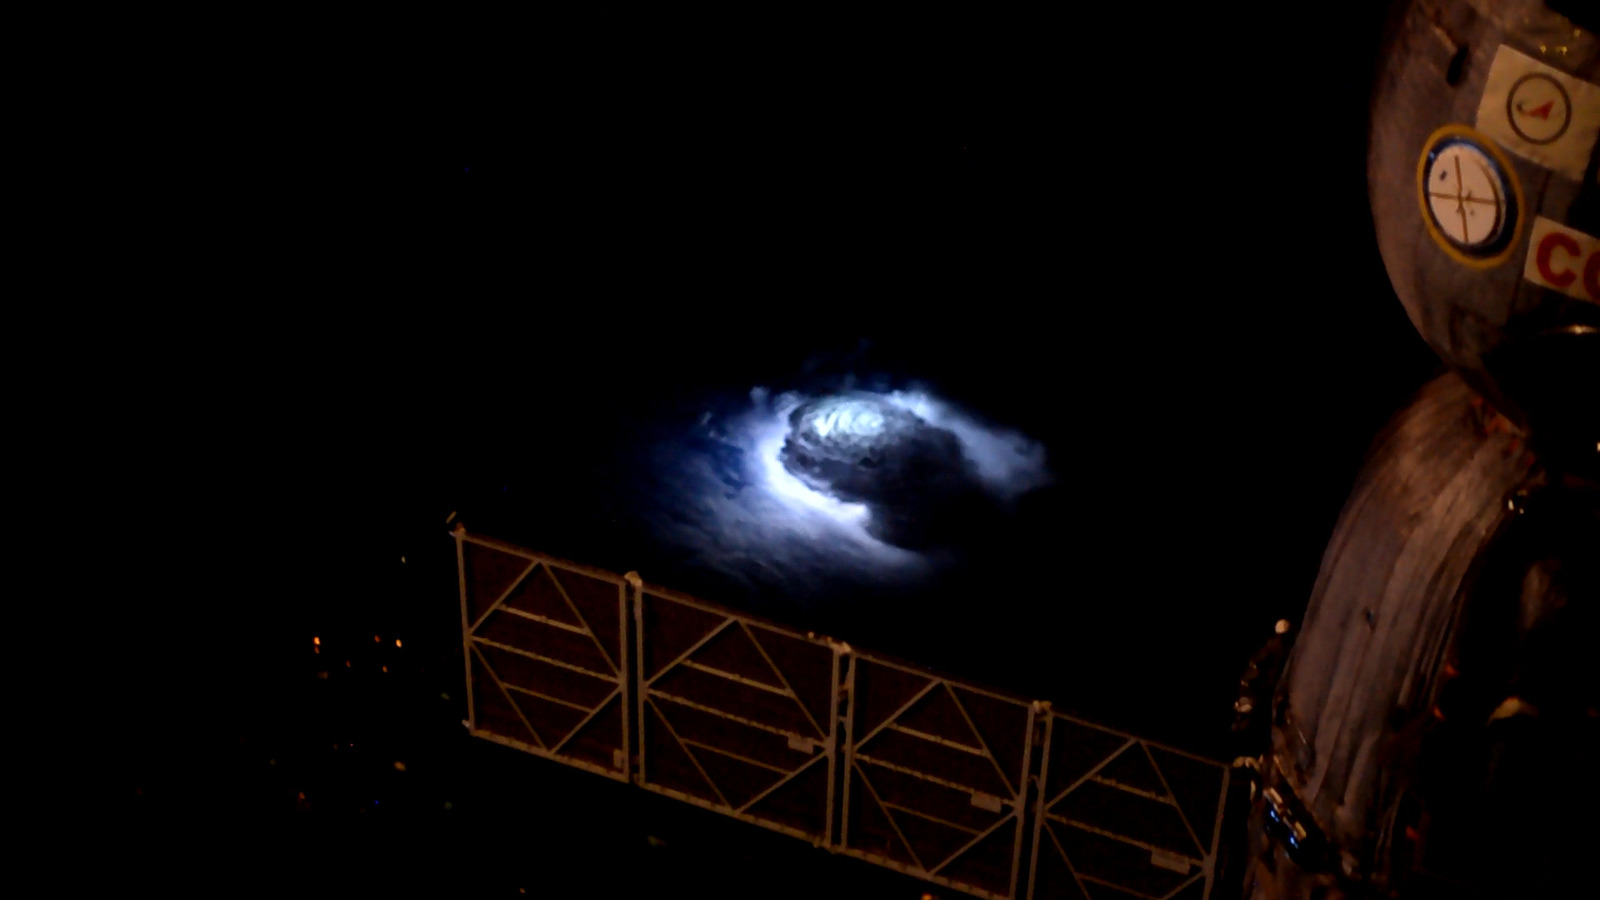 چگونه فضانوردان ایستگاه فضایی بین المللی عکس های باورنکردنی از رعد و برق از فضا می گیرند